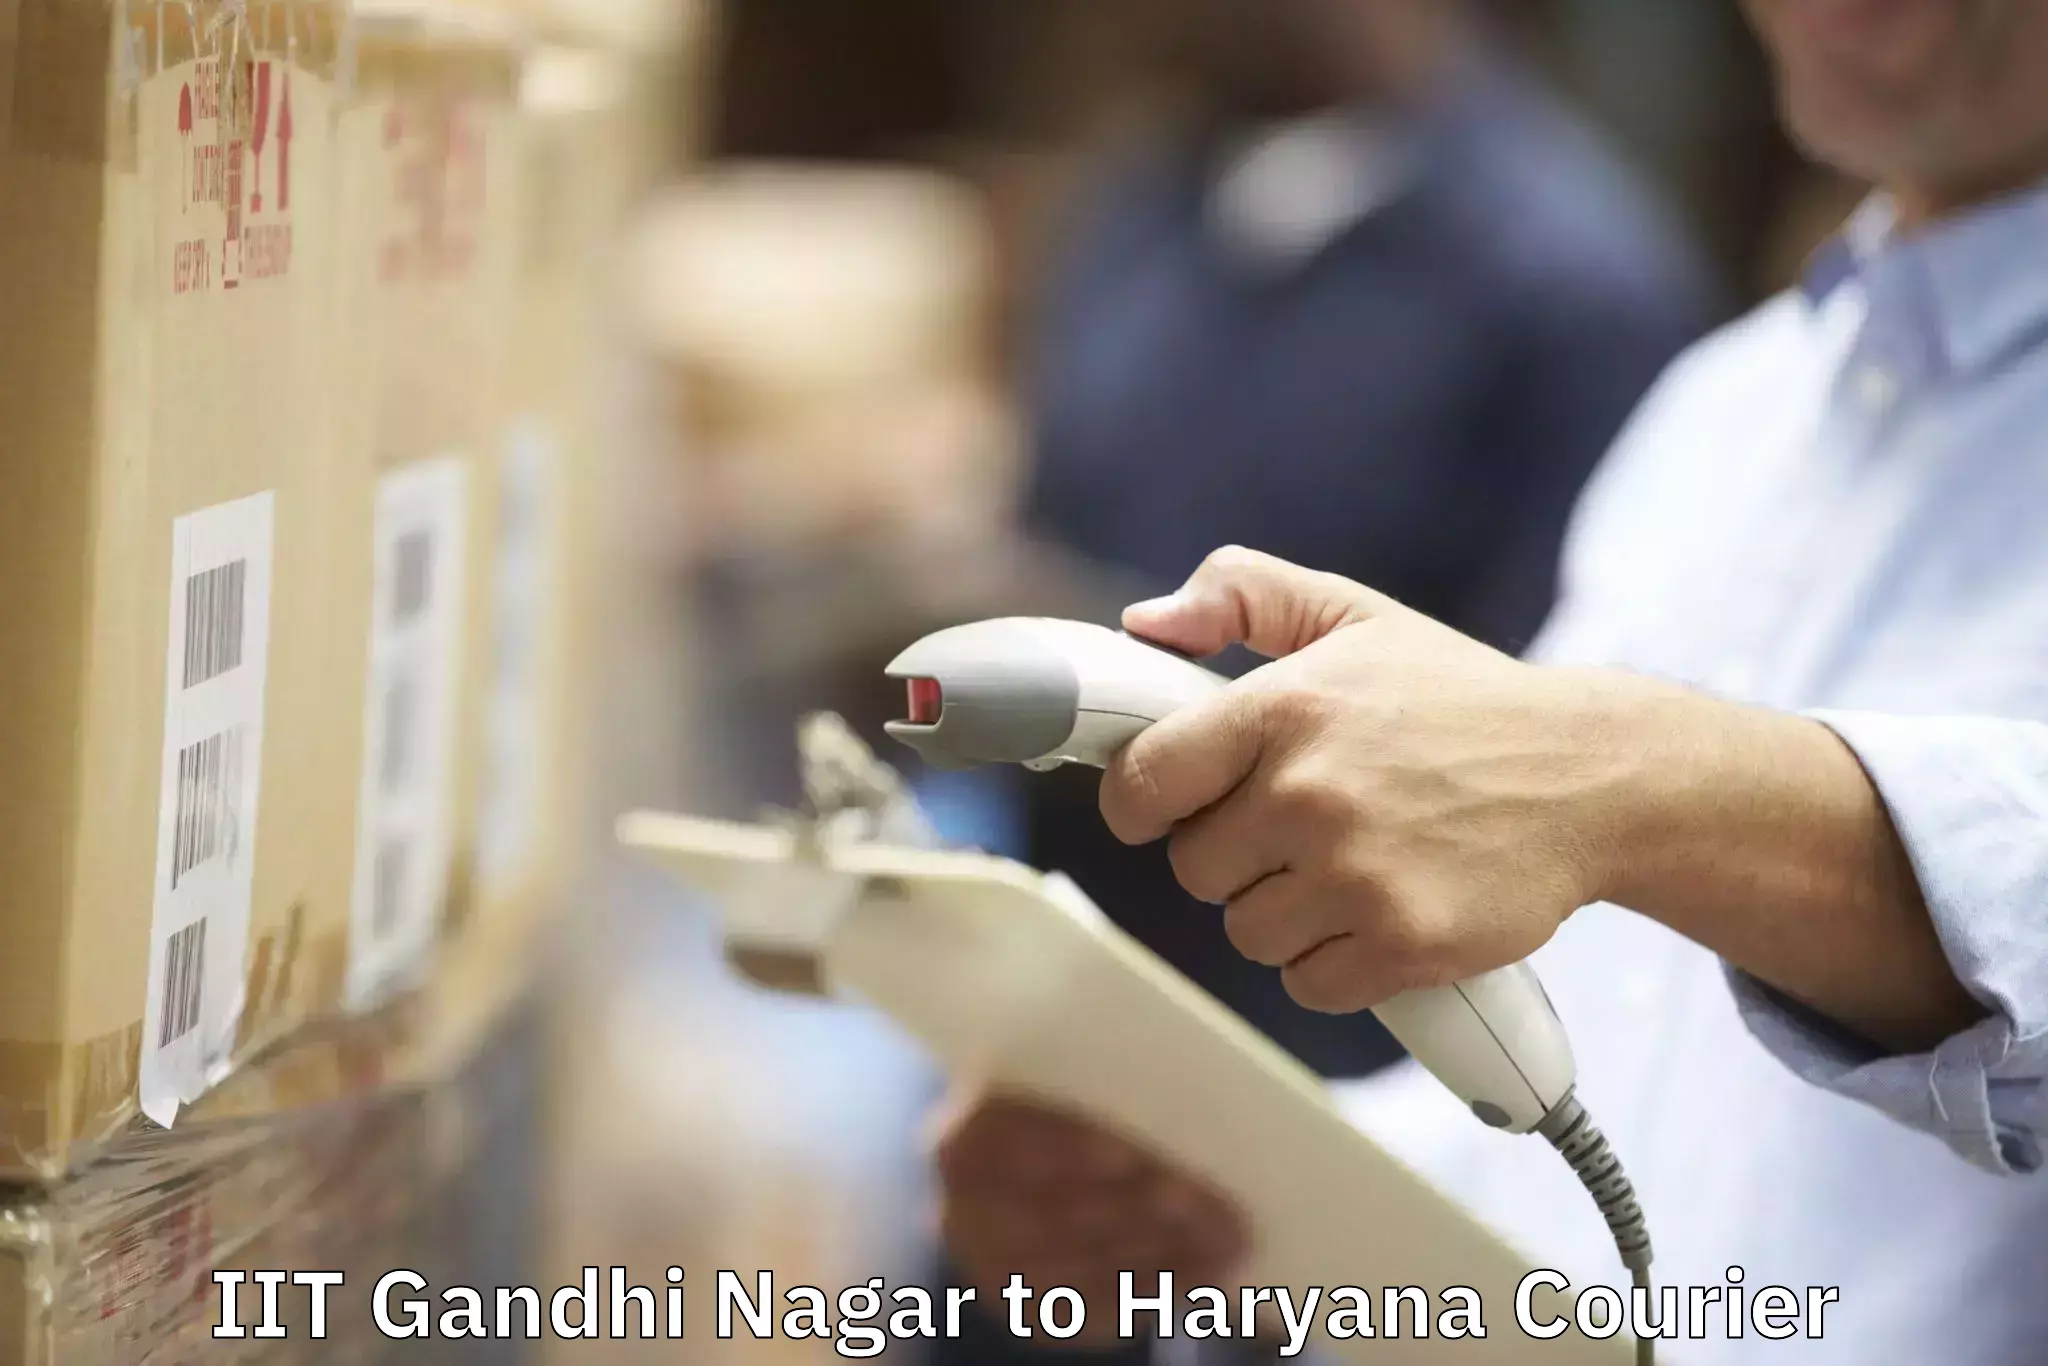 Home relocation solutions in IIT Gandhi Nagar to Haryana